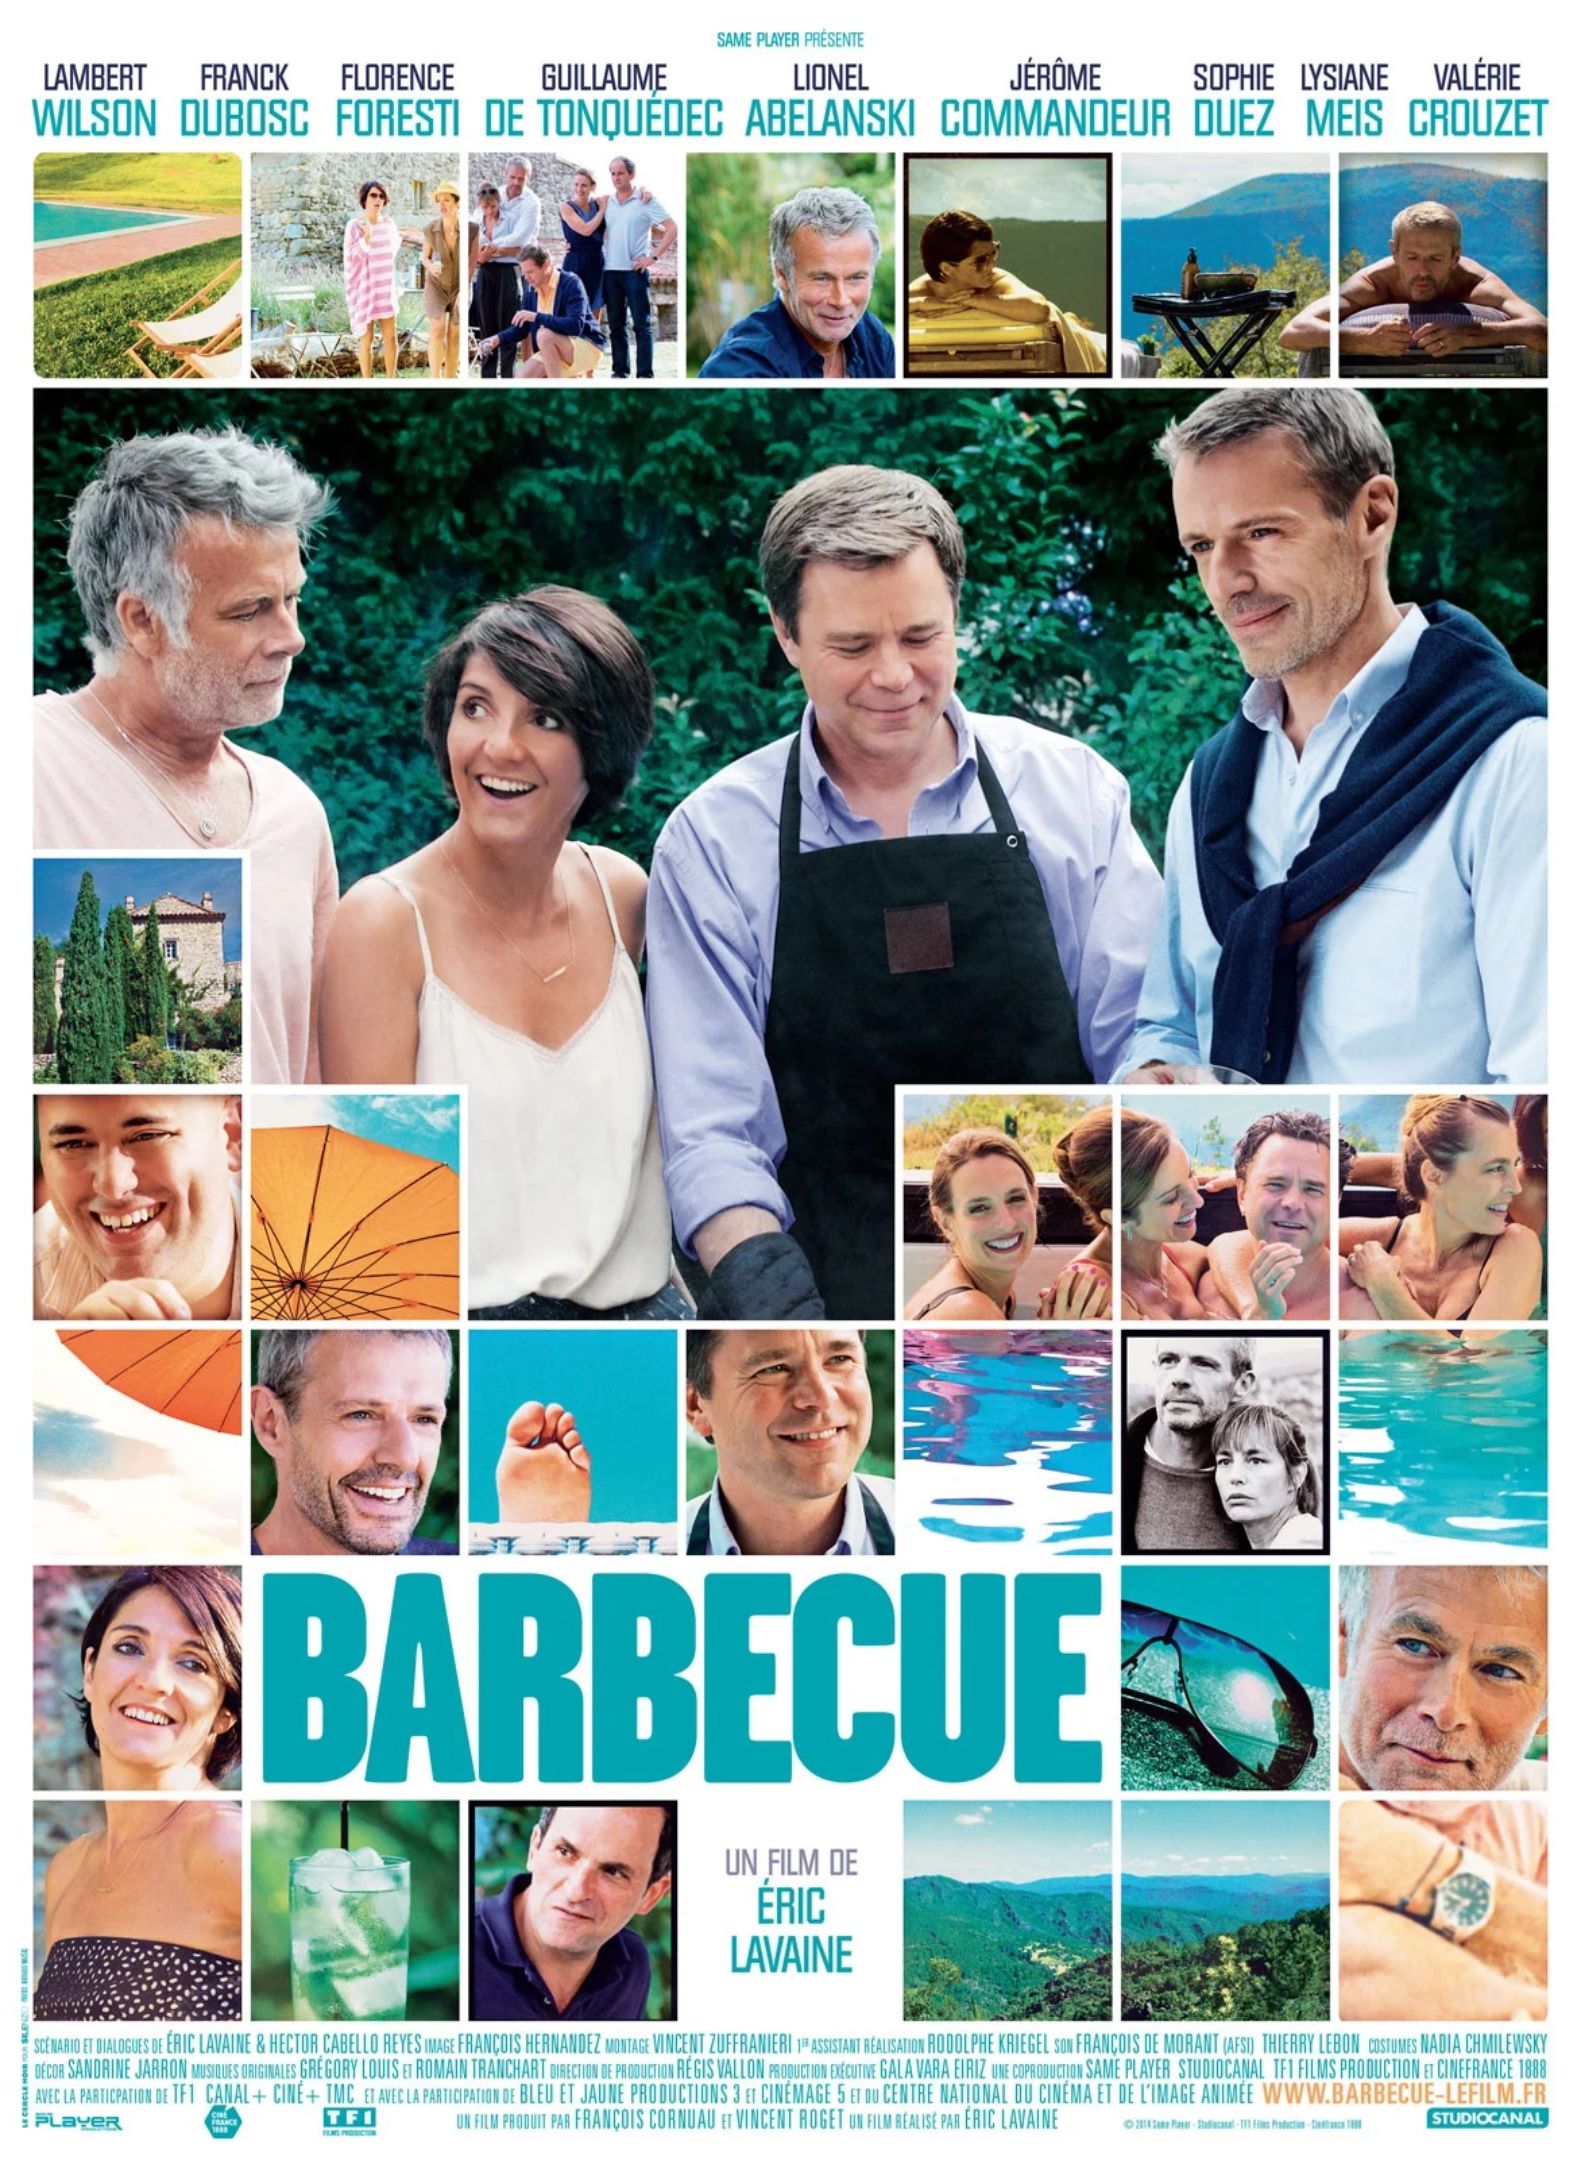  Affiche du film Barbecue @SamePlayer